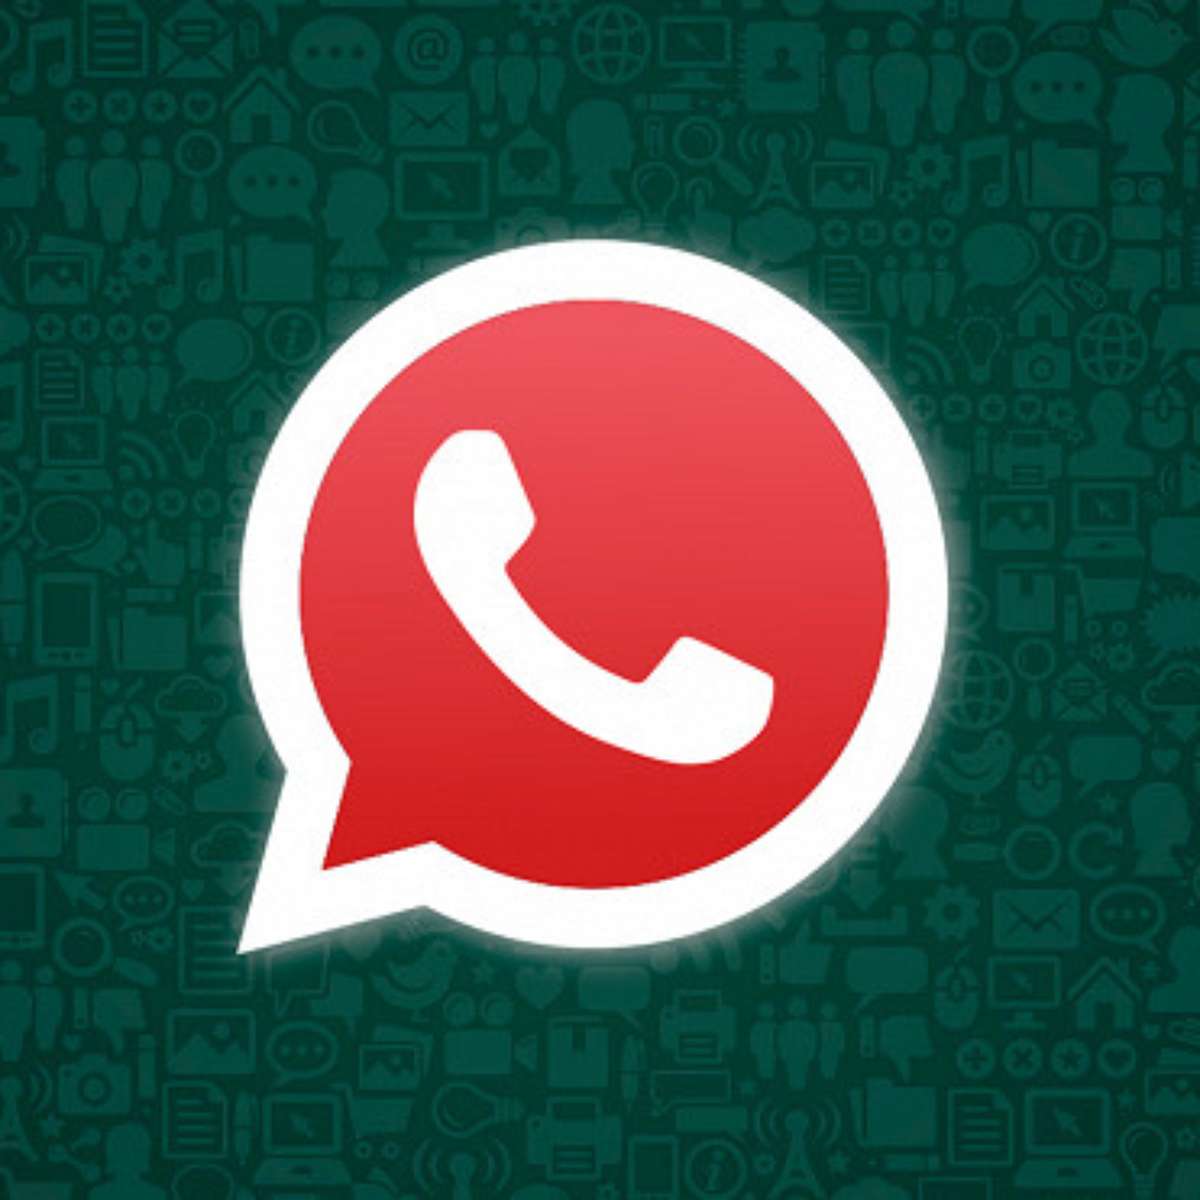 Testamos o WhatsApp GB  Afinal, é seguro ou é roubada? - Canaltech